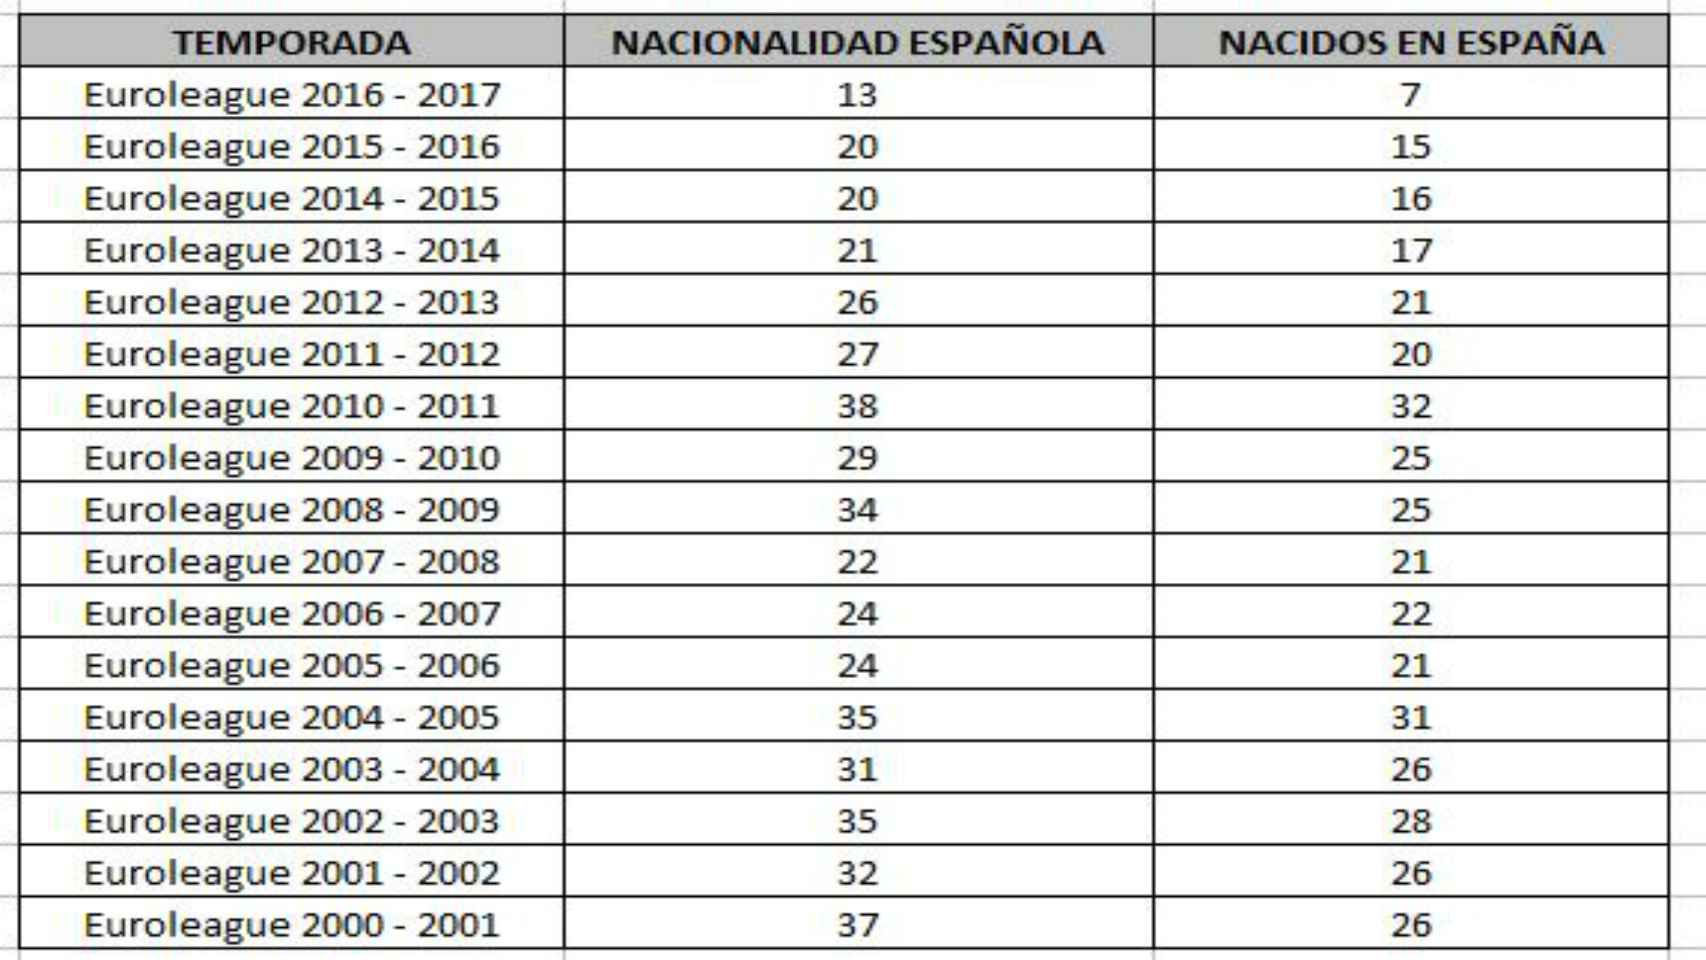 Nacidos en España y jugadores con nacionalidad española en Euroliga año a año.